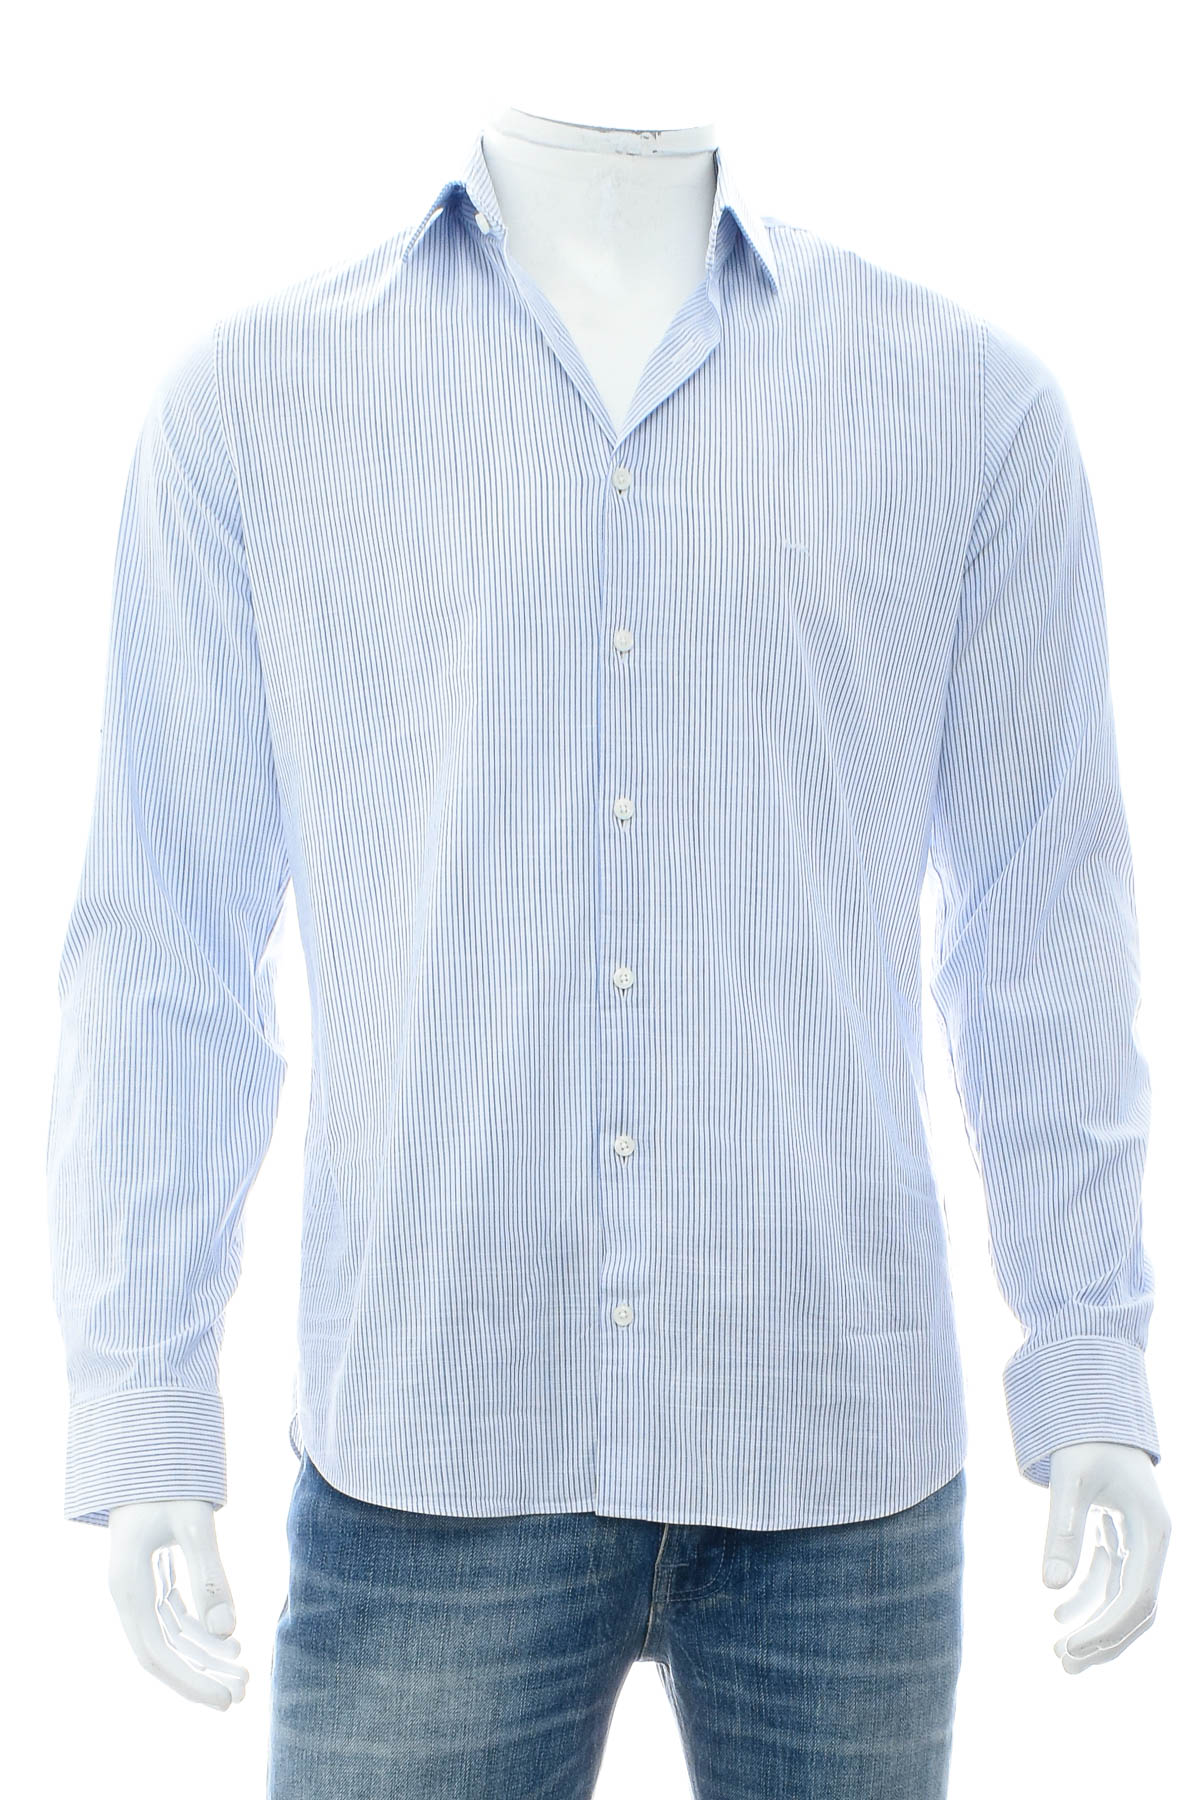 Ανδρικό πουκάμισο - Michael Kors - 0